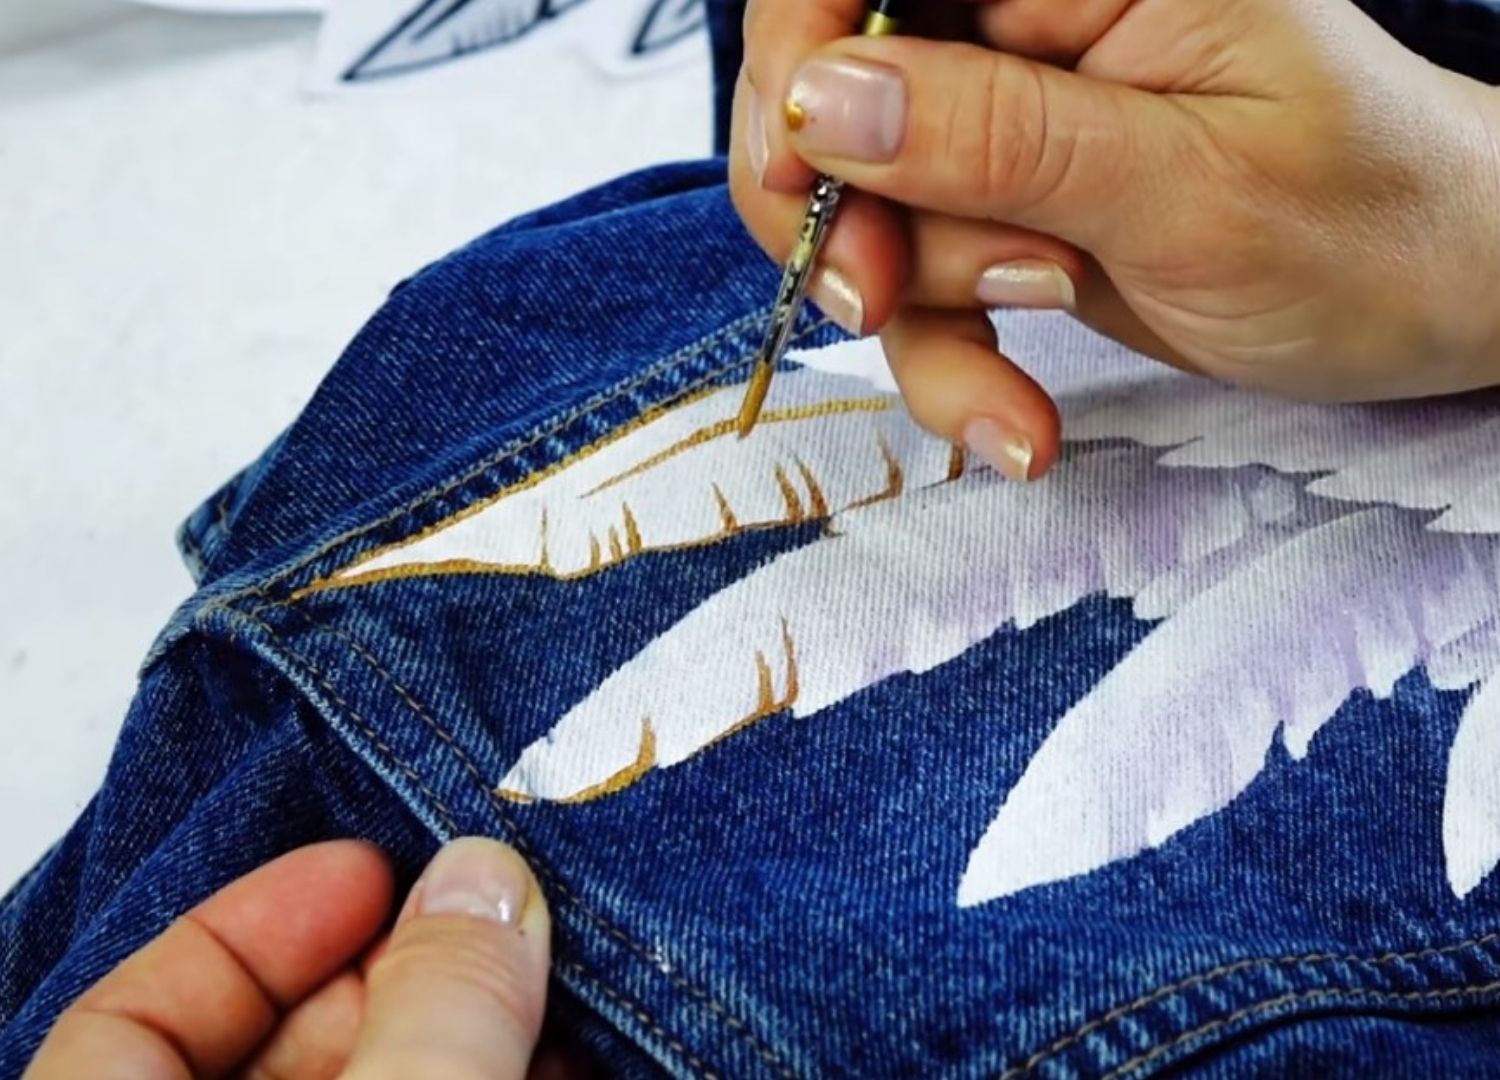 Вот твои крылья! Кастомизируем джинсовую куртку: трафаретный рисунок на куртке акриловыми красками